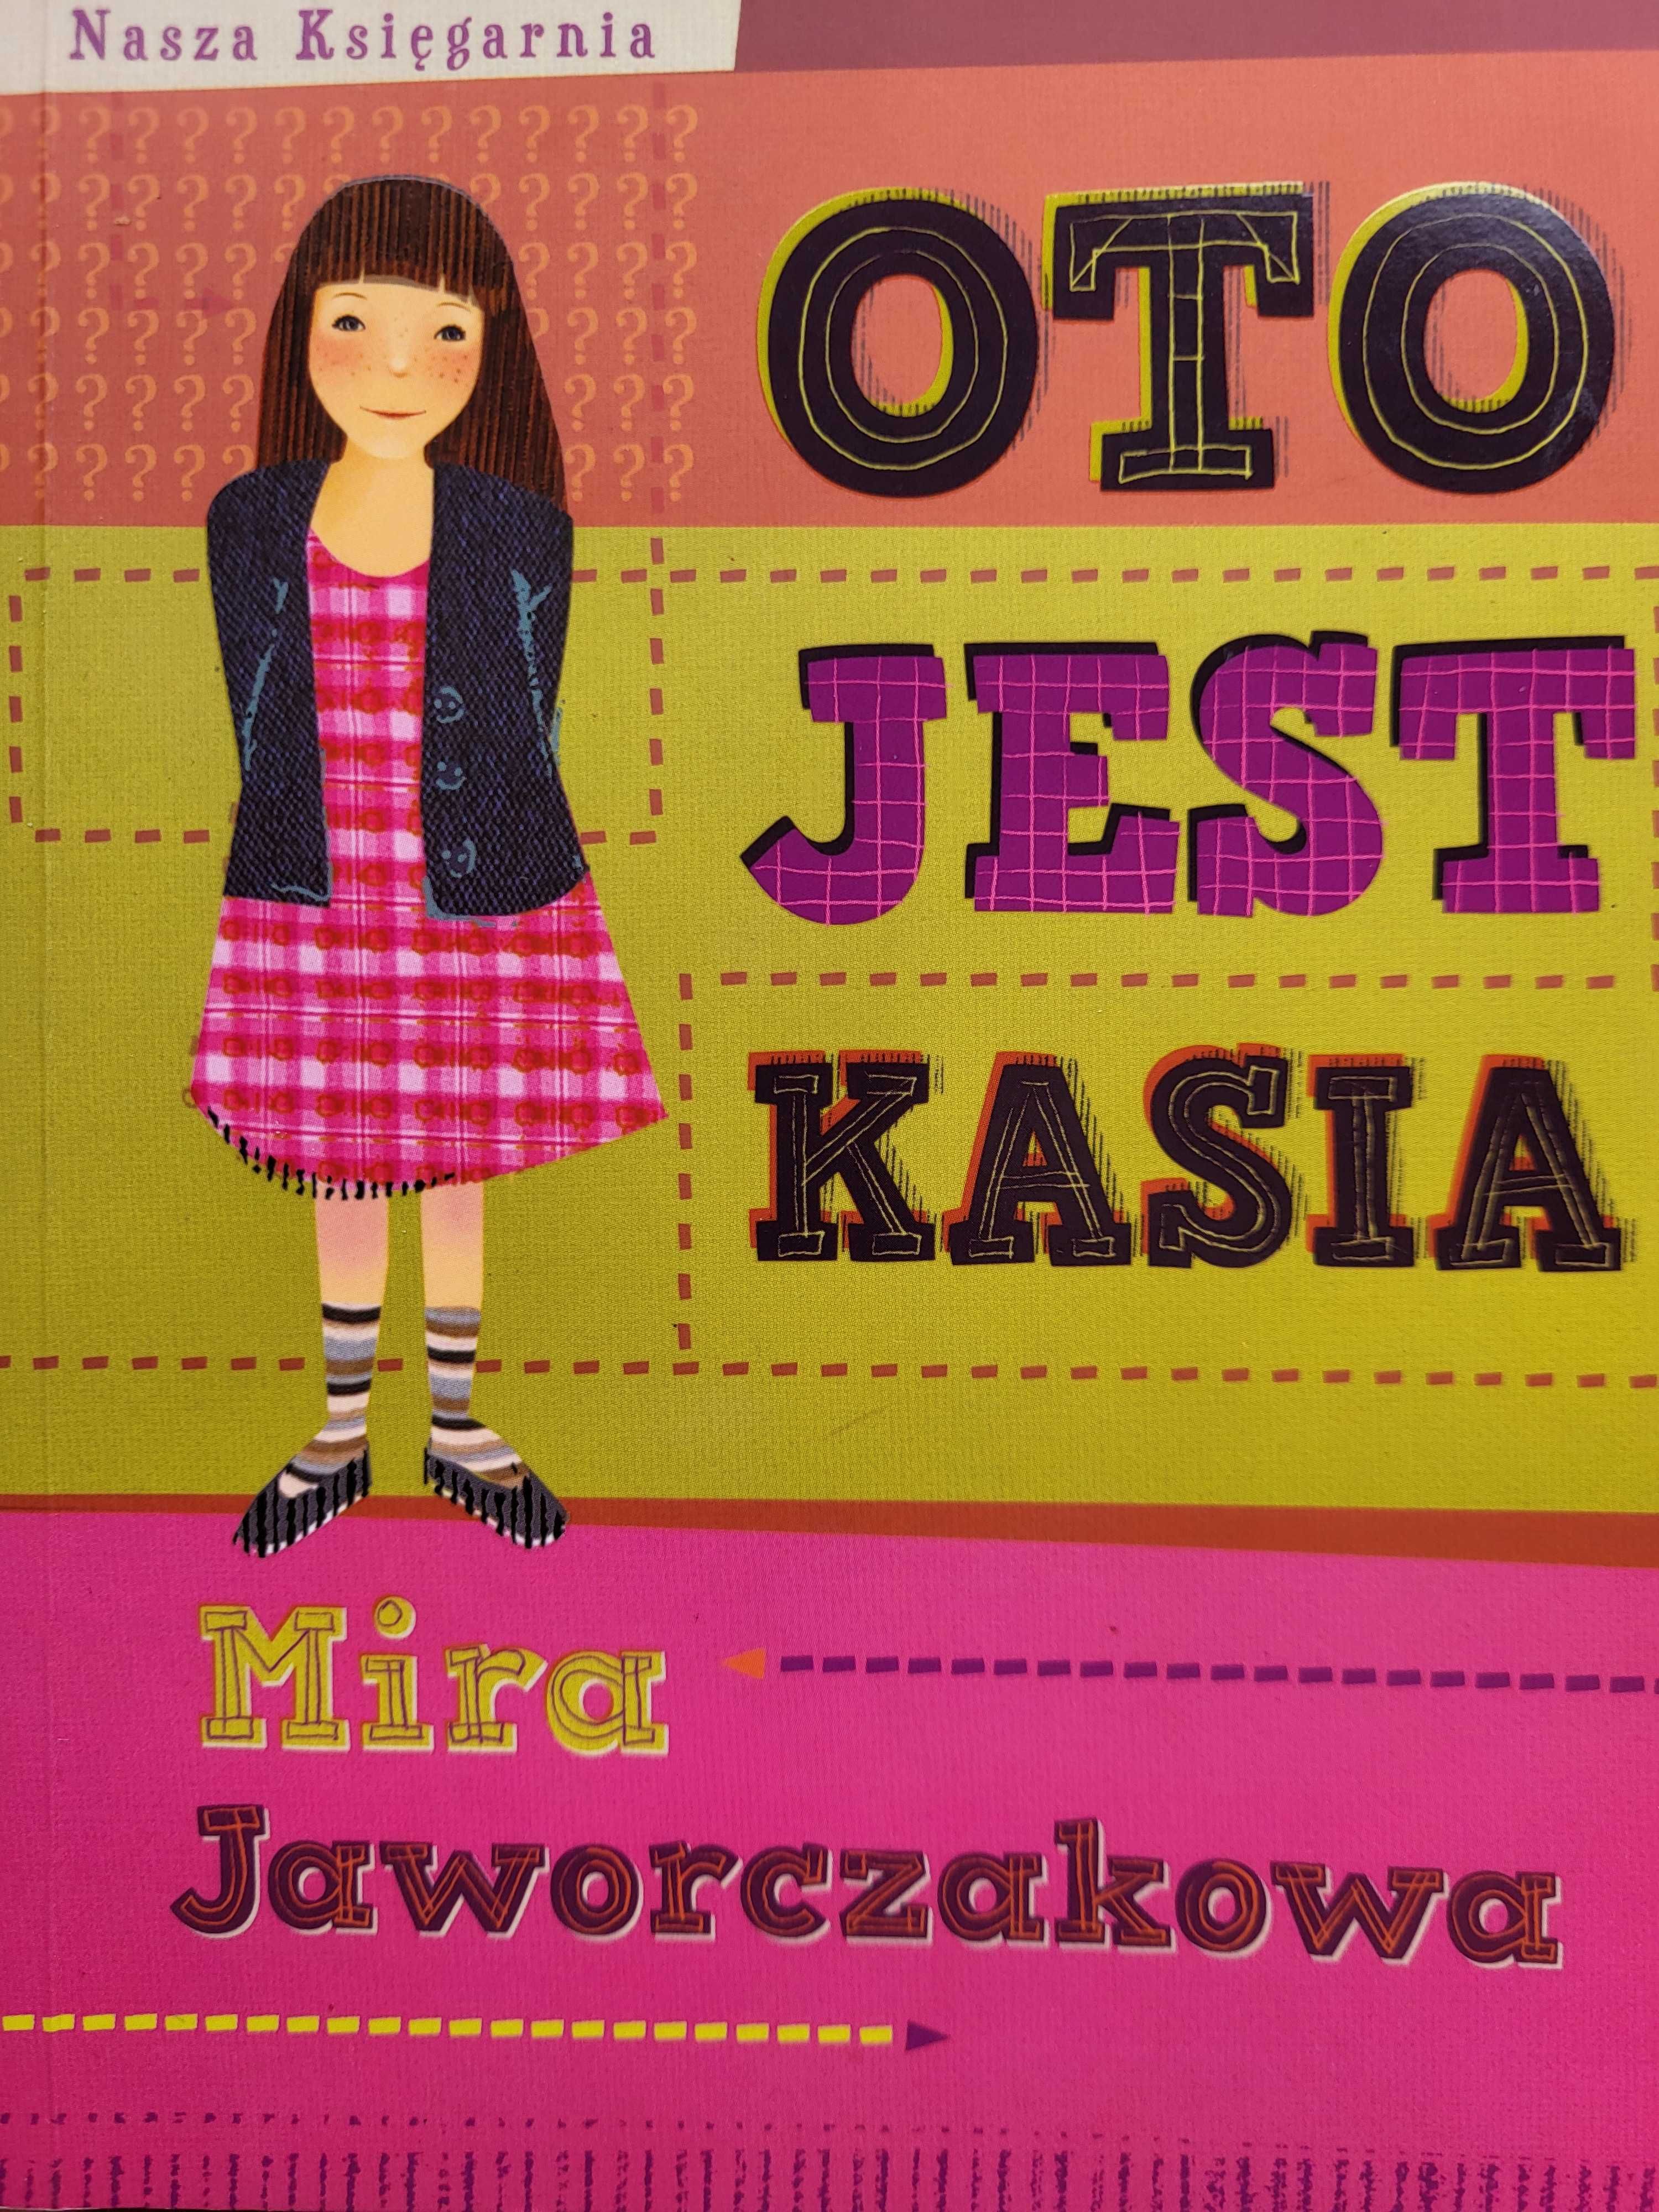 "Oto jest Kasia " - Mira Jaworczakowa